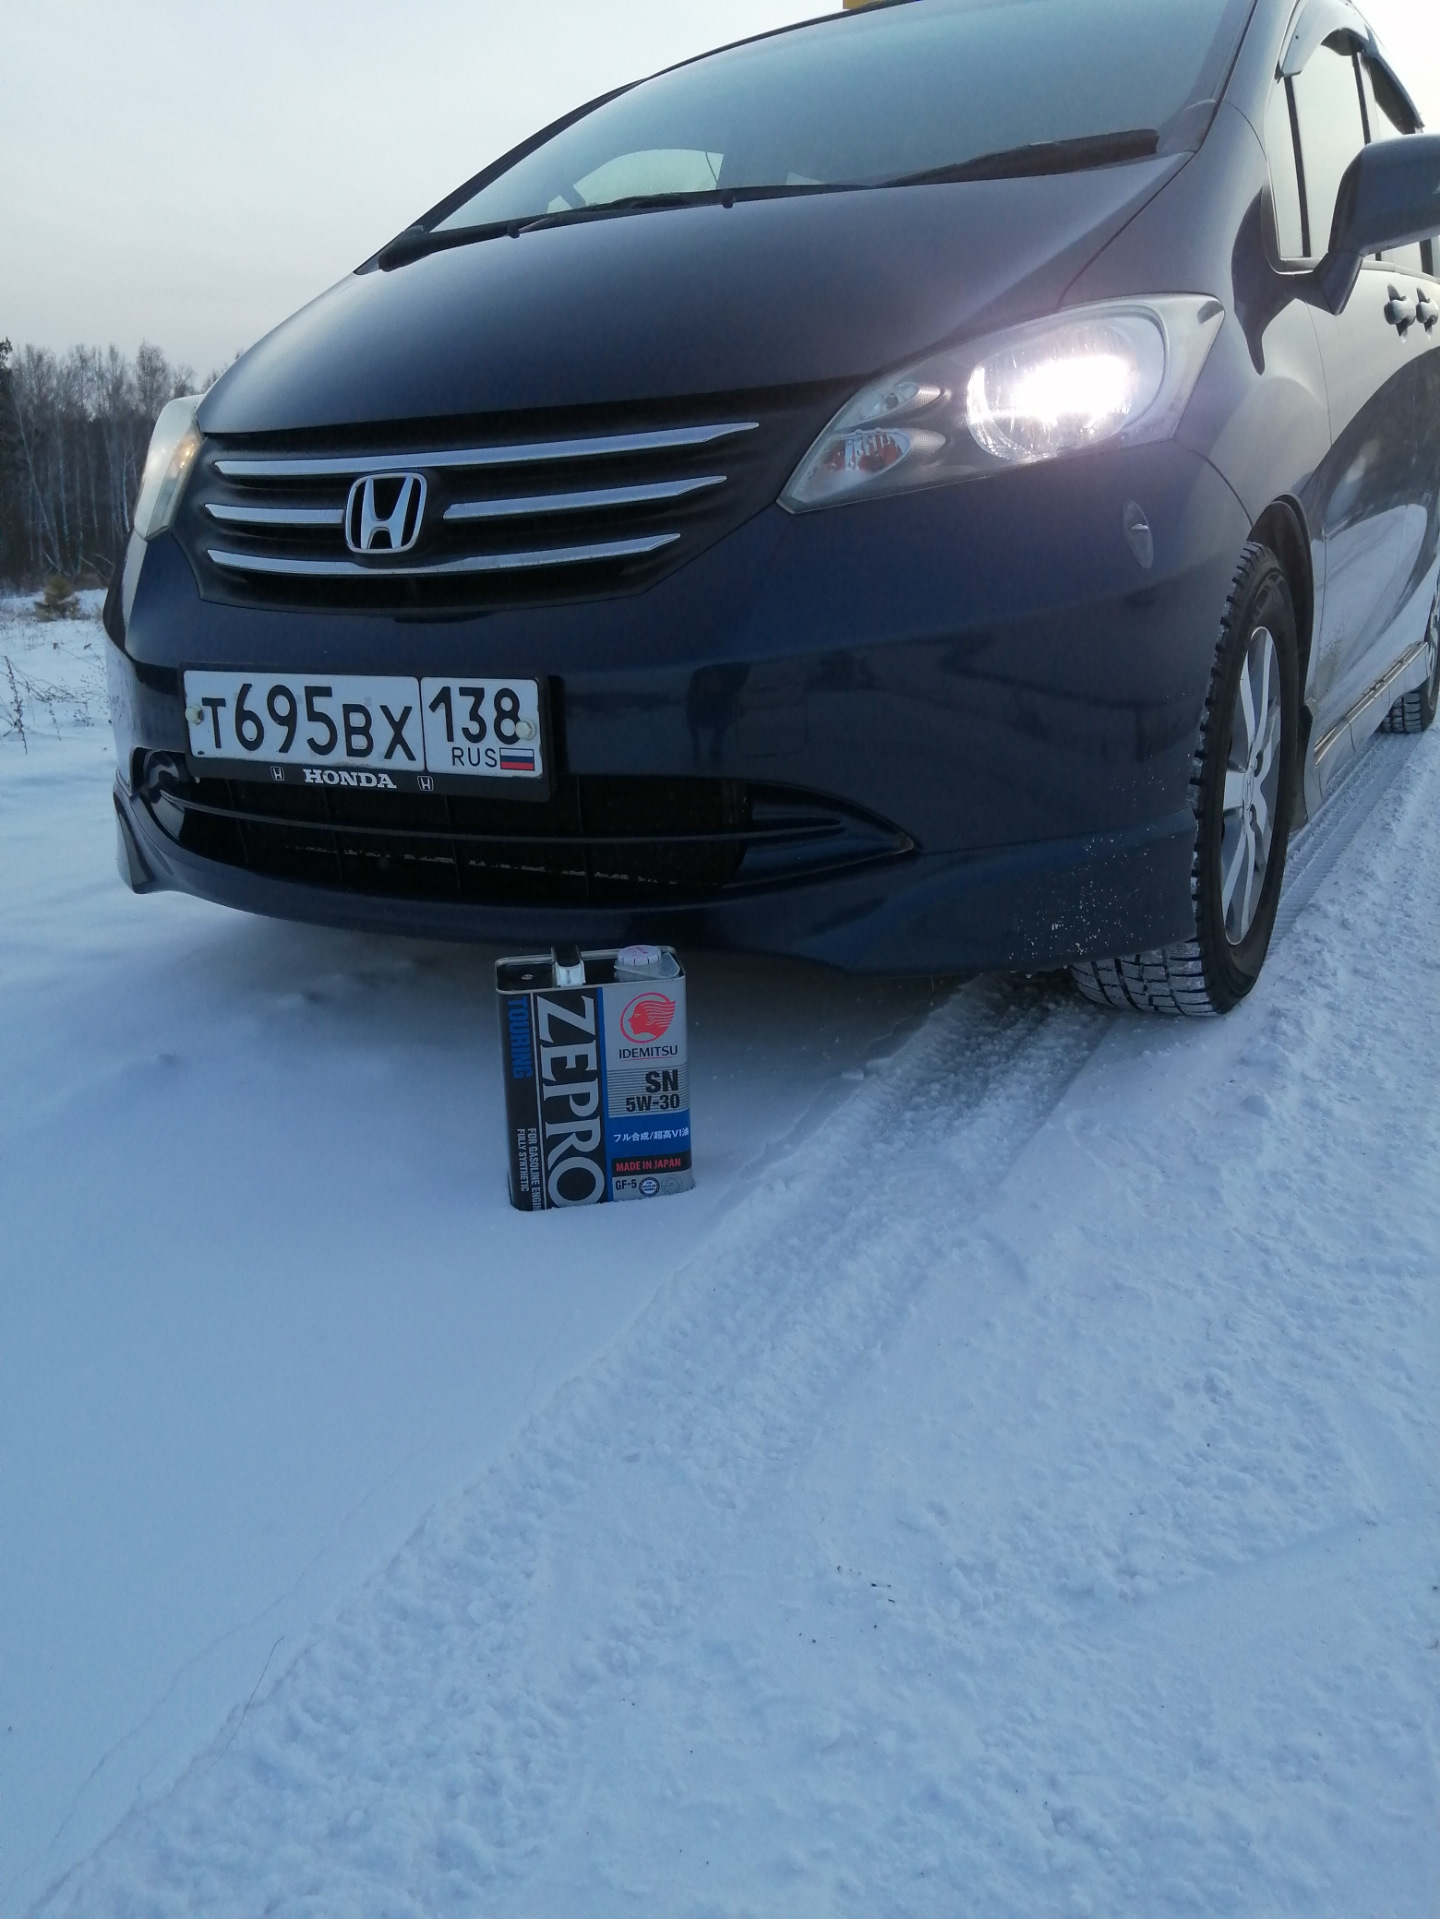 Хонда Фрид 2011 черный. Volkswagen Caddy 2012 бордовый. Хонда Фрид 2009 фото в Красноярске. Хонда freed черная зимой.